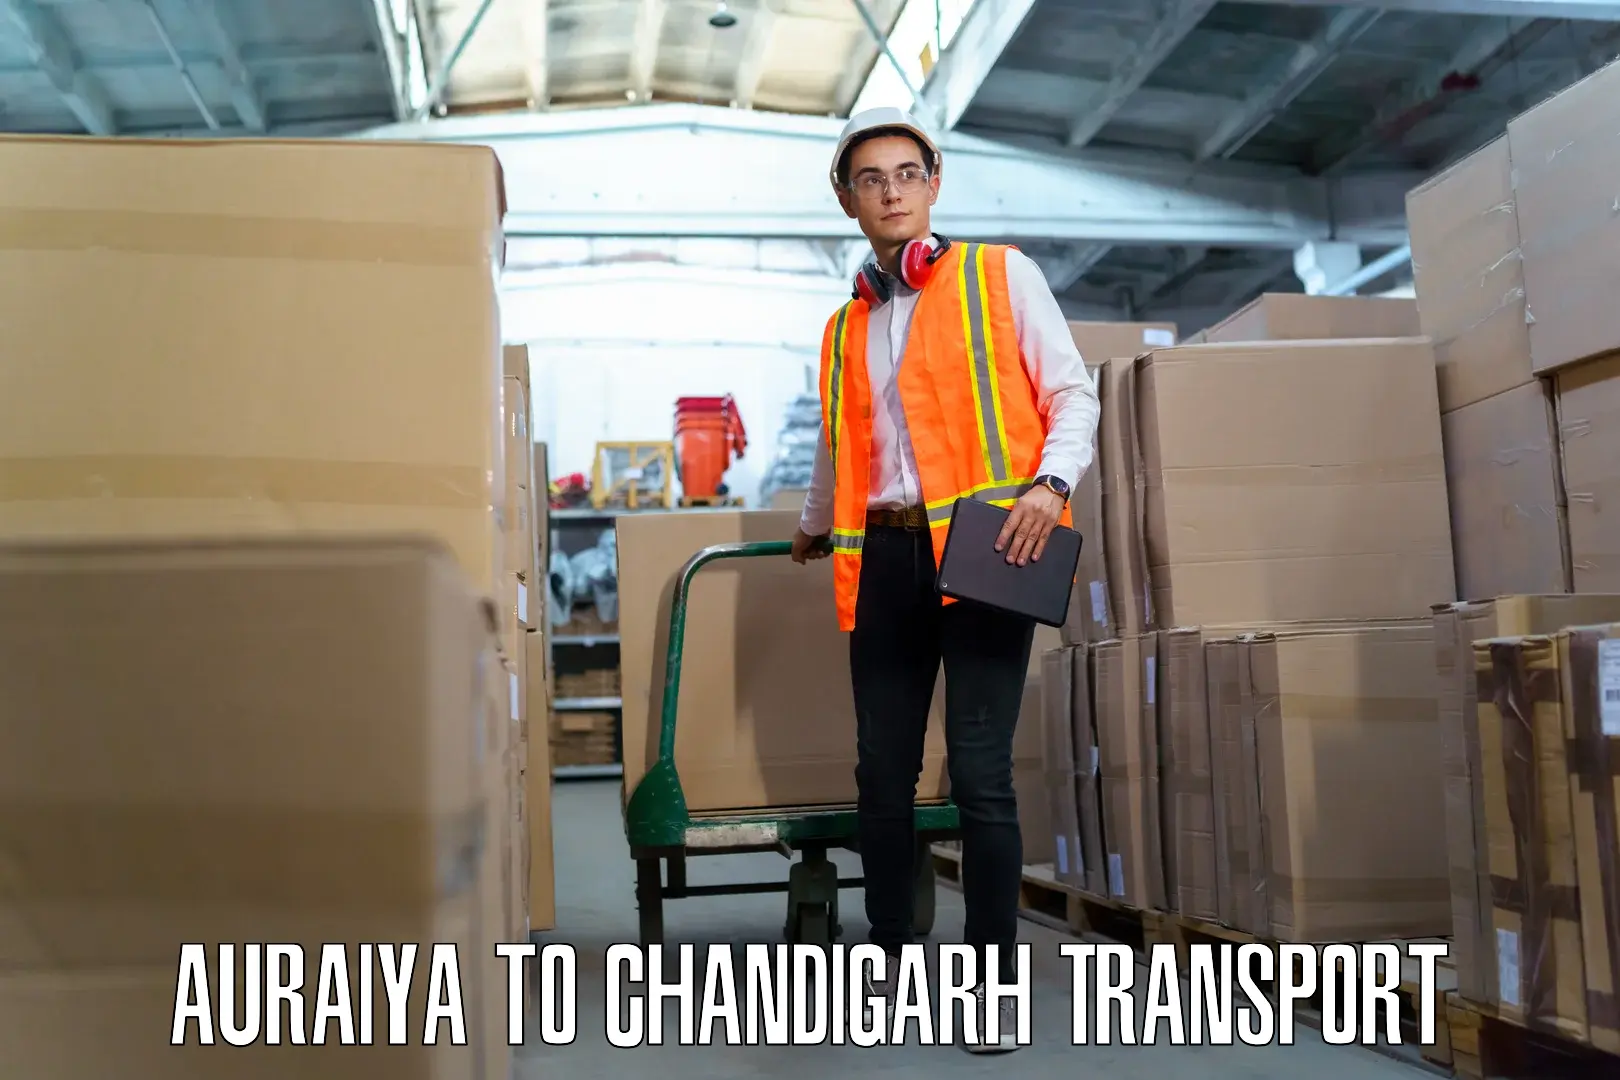 Interstate transport services Auraiya to Chandigarh